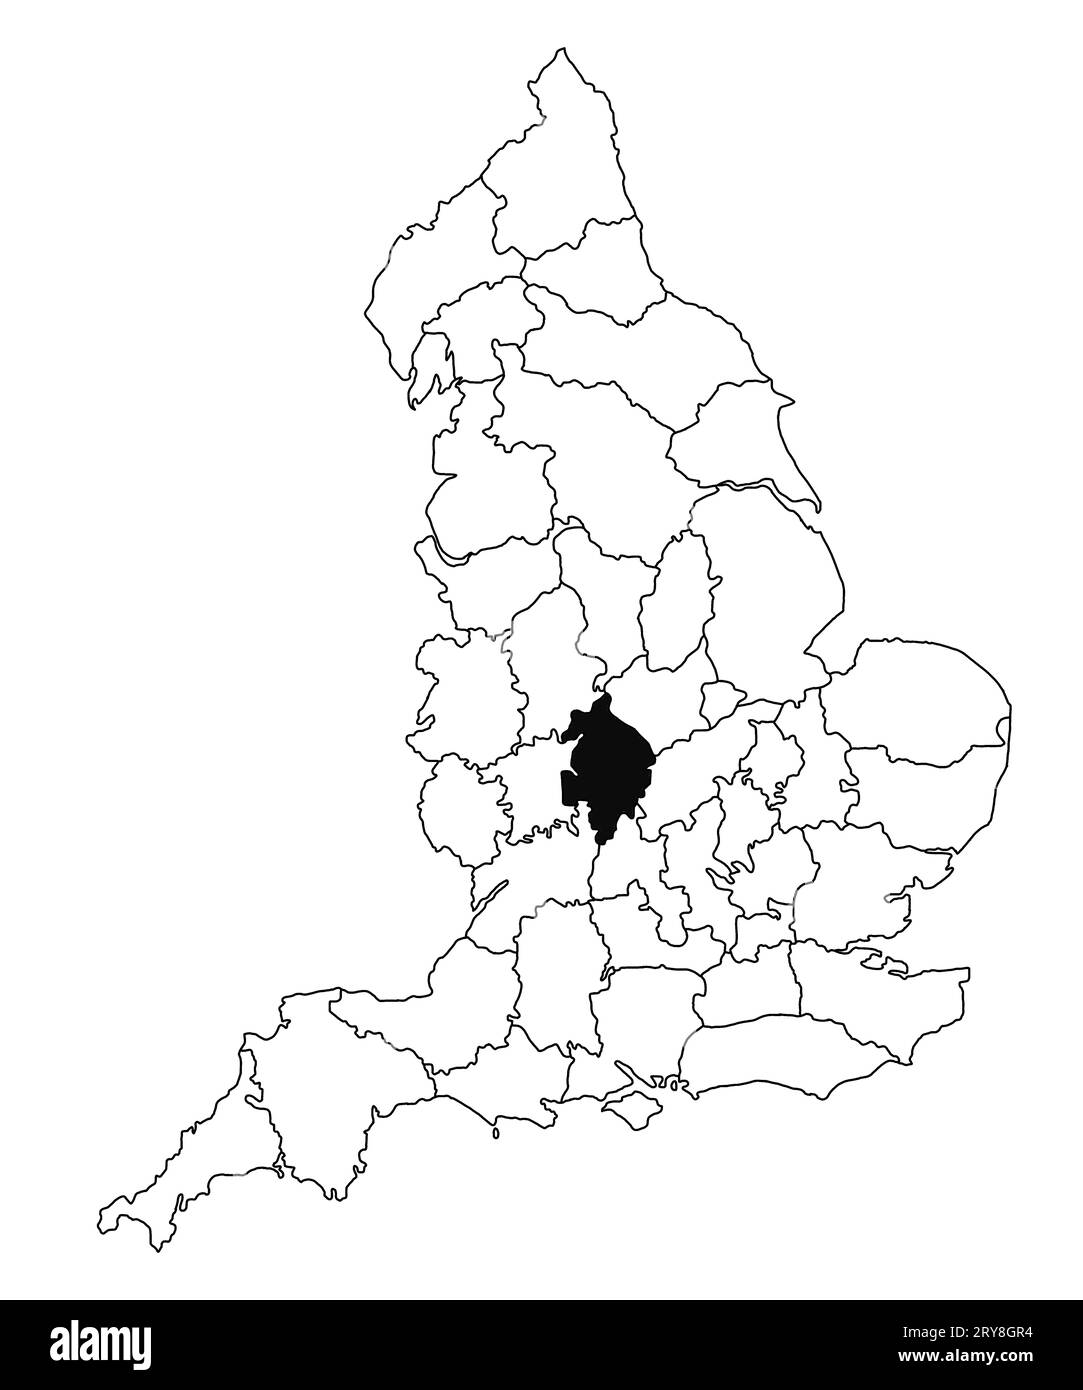 Mappa della contea di Warwickshire in Inghilterra su sfondo bianco. Mappa singola della contea evidenziata da colore nero sulla mappa amministrativa dell'Inghilterra. United Kingdo Foto Stock